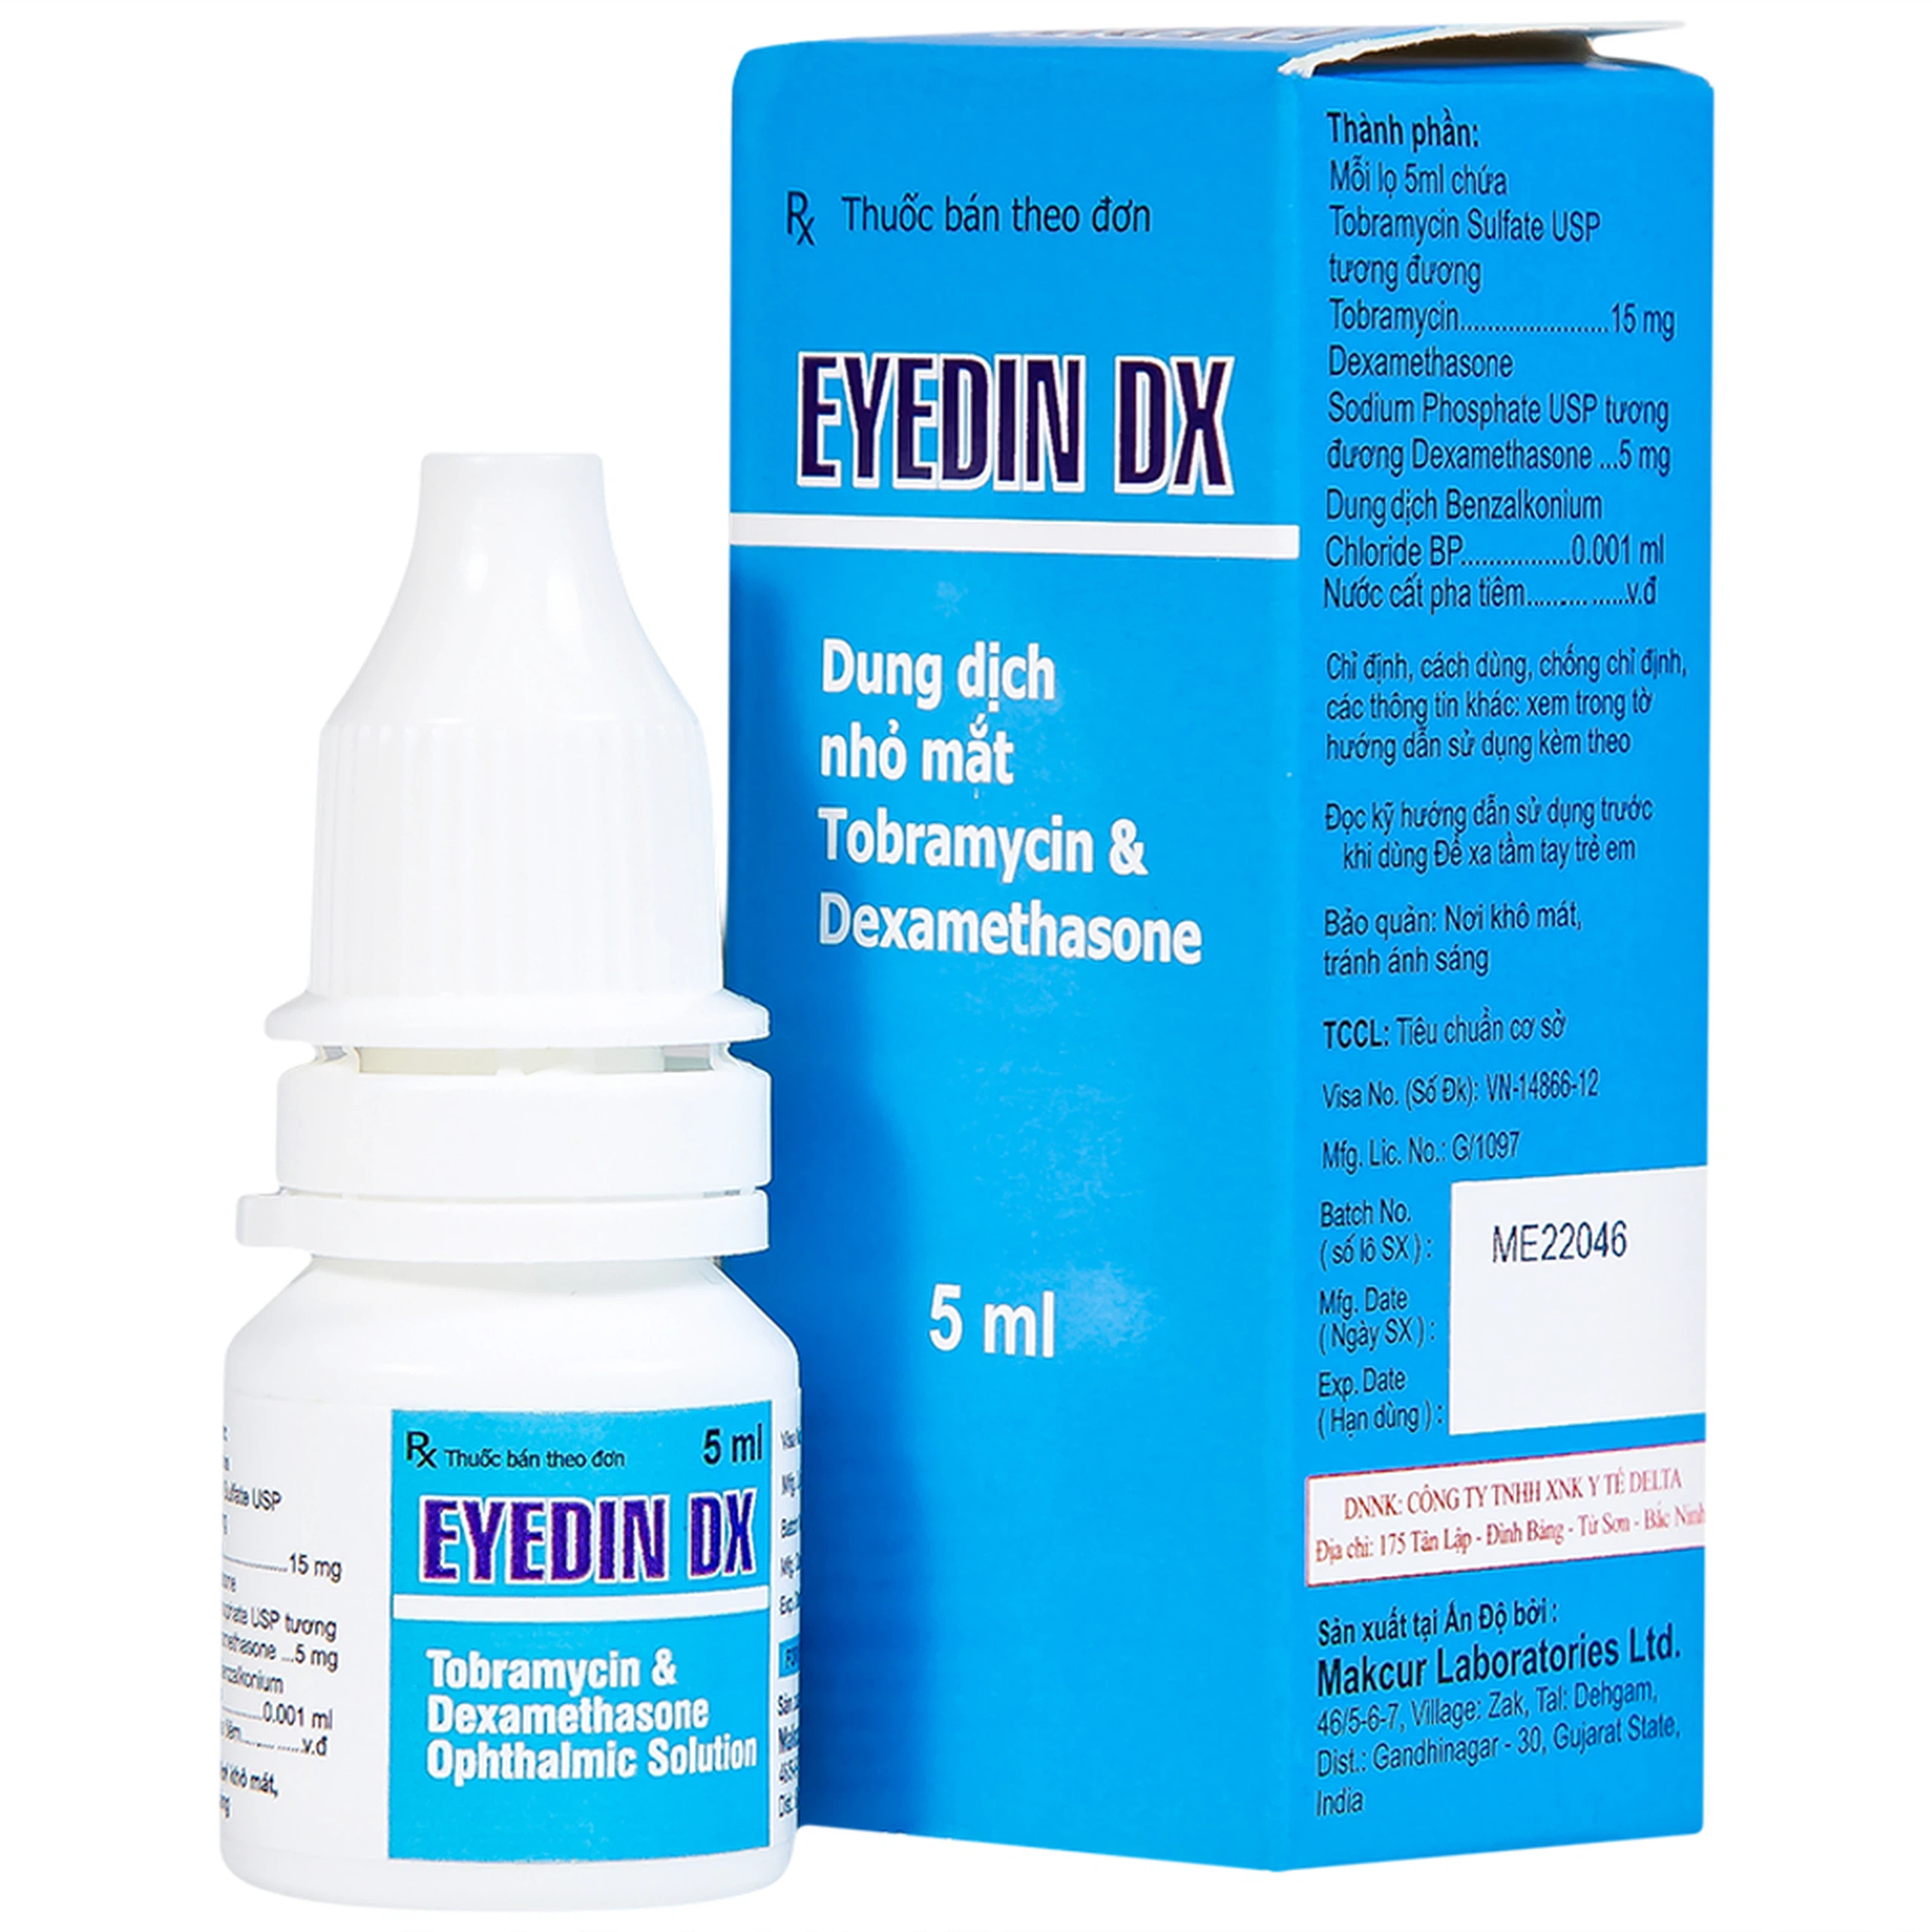 Thuốc nhỏ mắt Eyedin DX Makcur điều trị nhiểm khuẩn mắt (5ml)